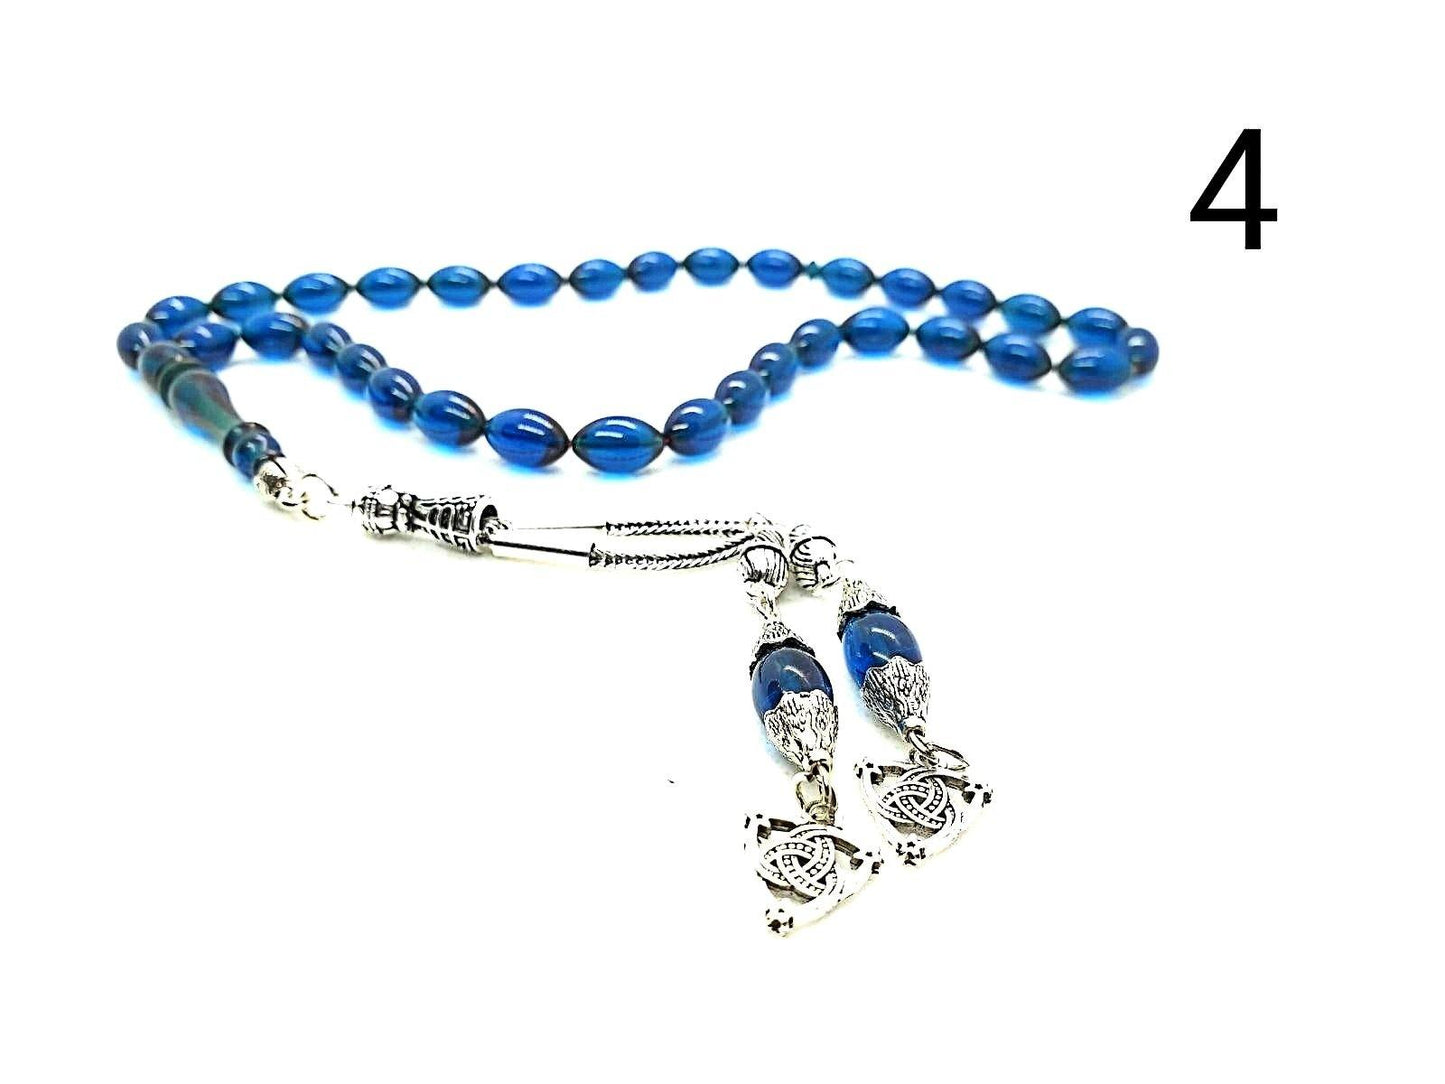   komboloi-greek-worry-beads-faturan-mastic-prayer-beads-rosary-beads-turkish-tasbih- handmade-gemstone